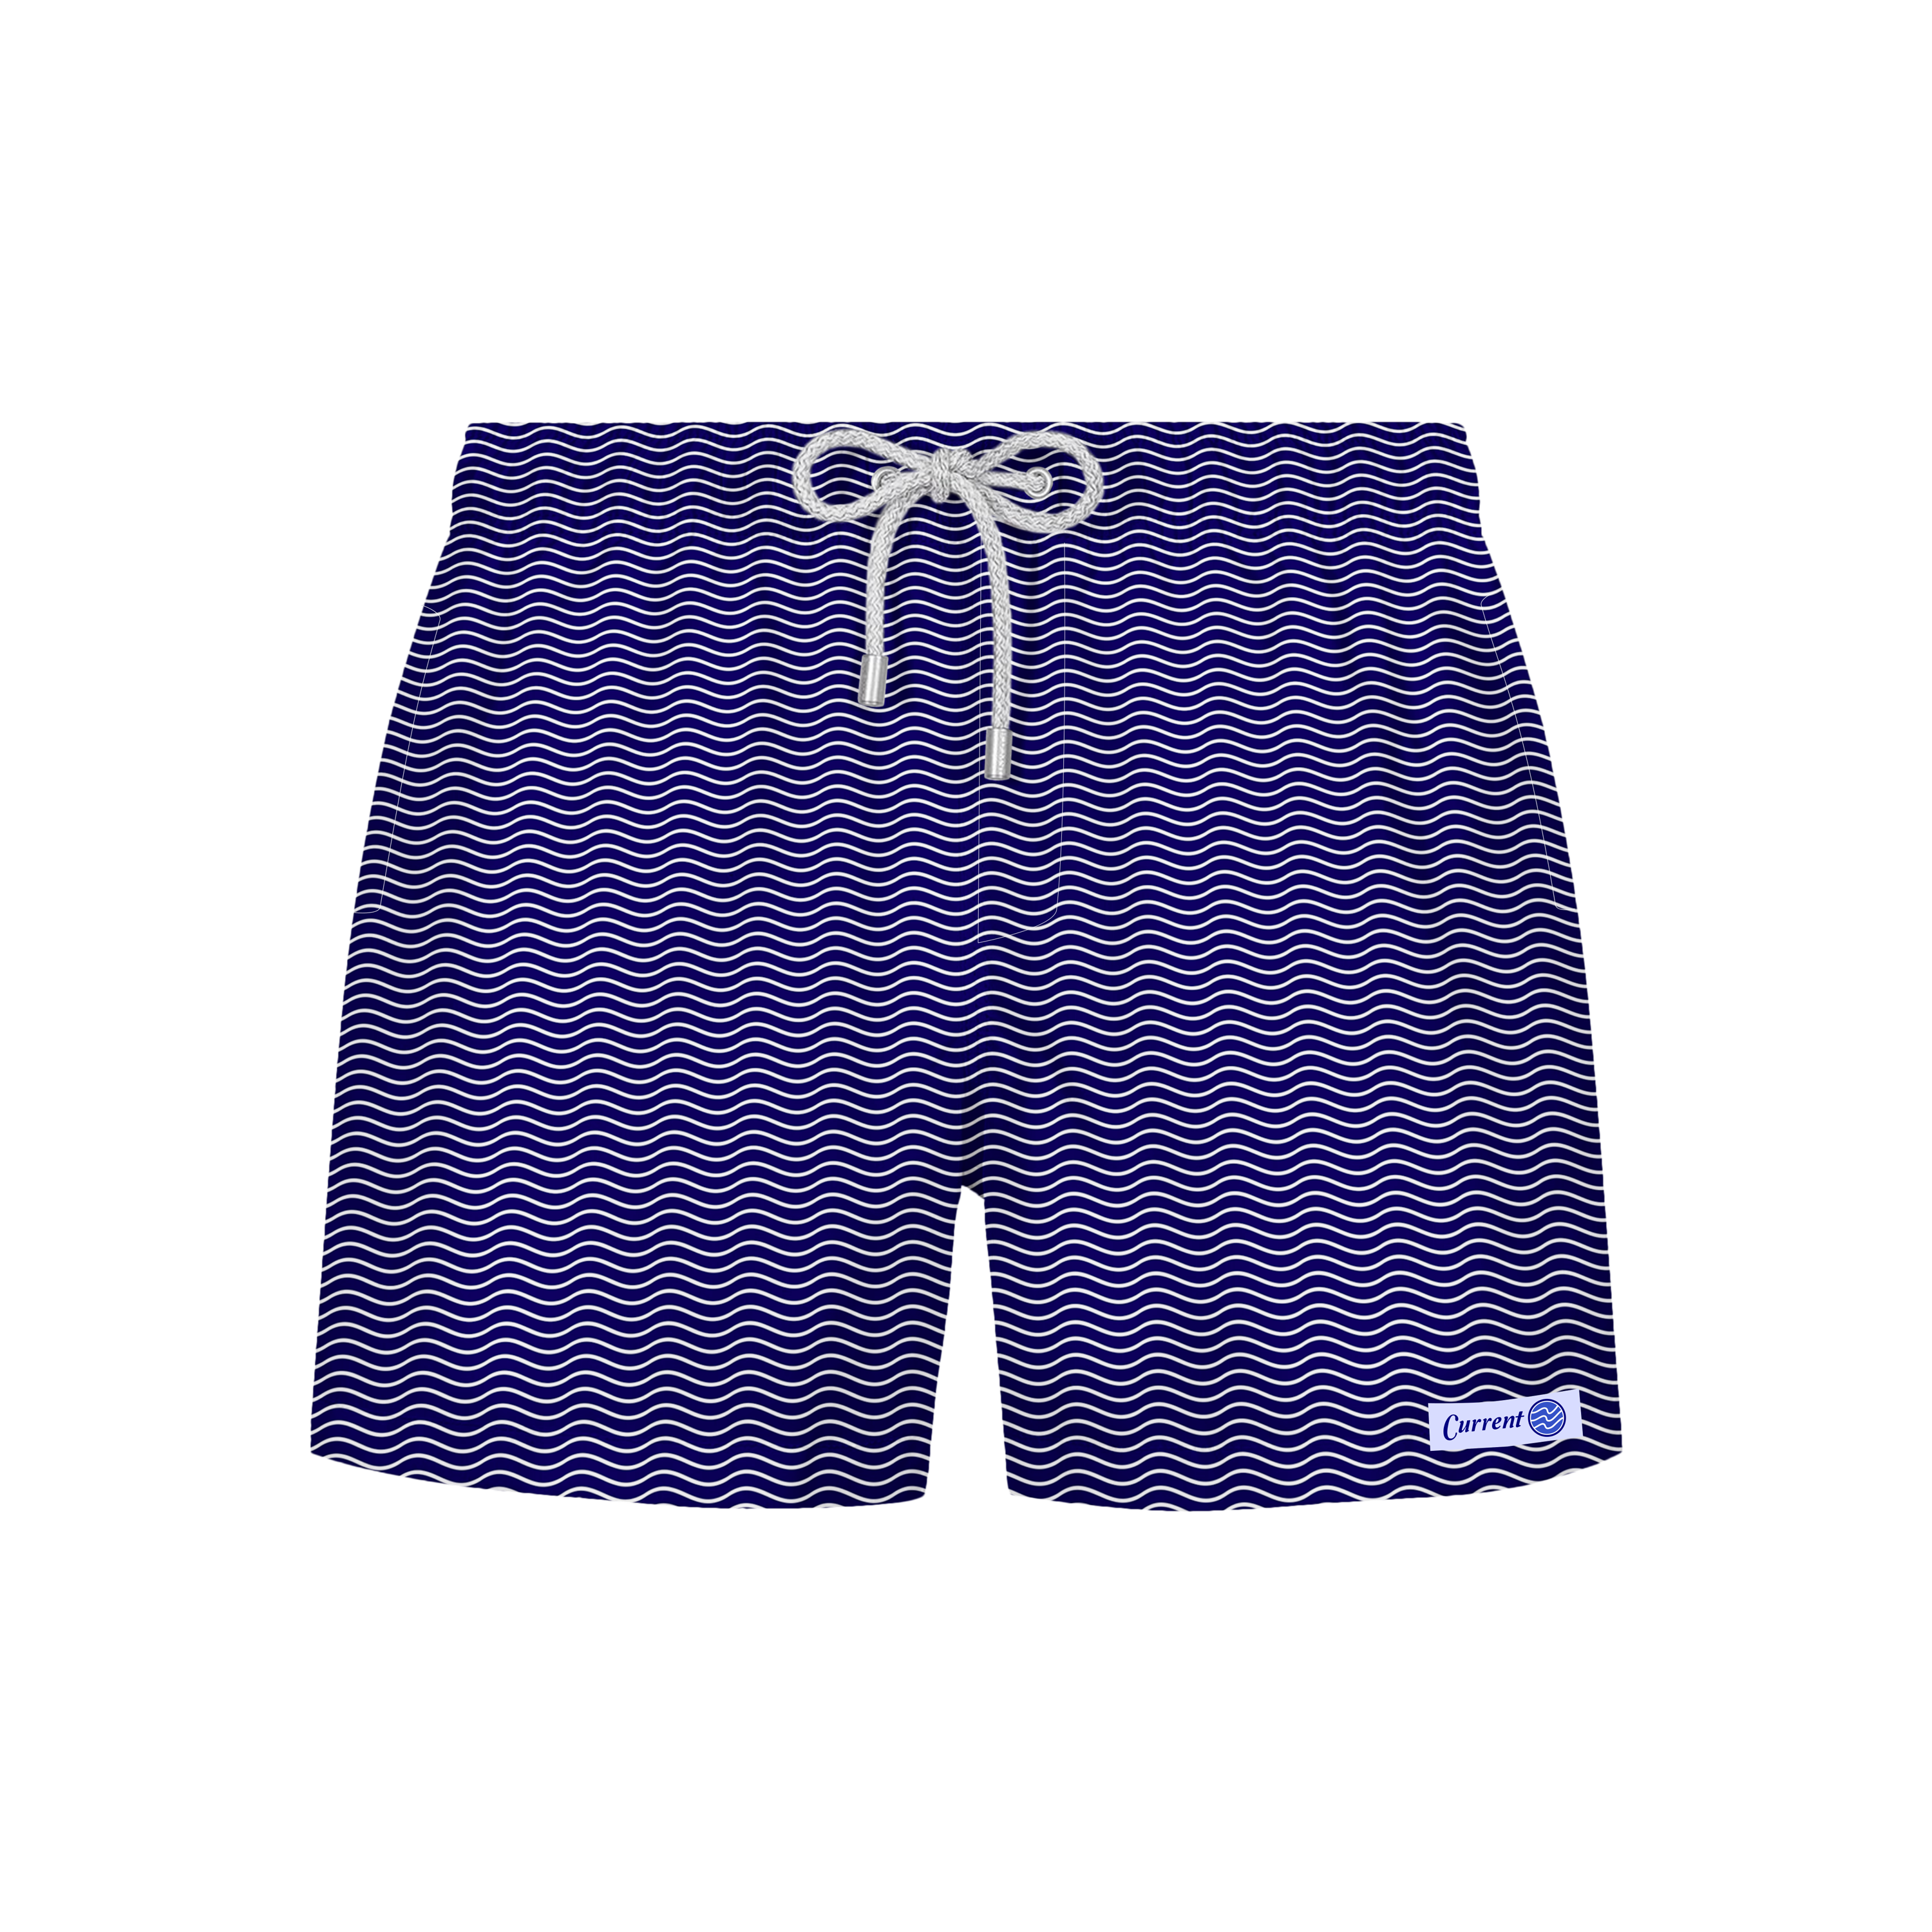 Blue Wave Swim Shorts